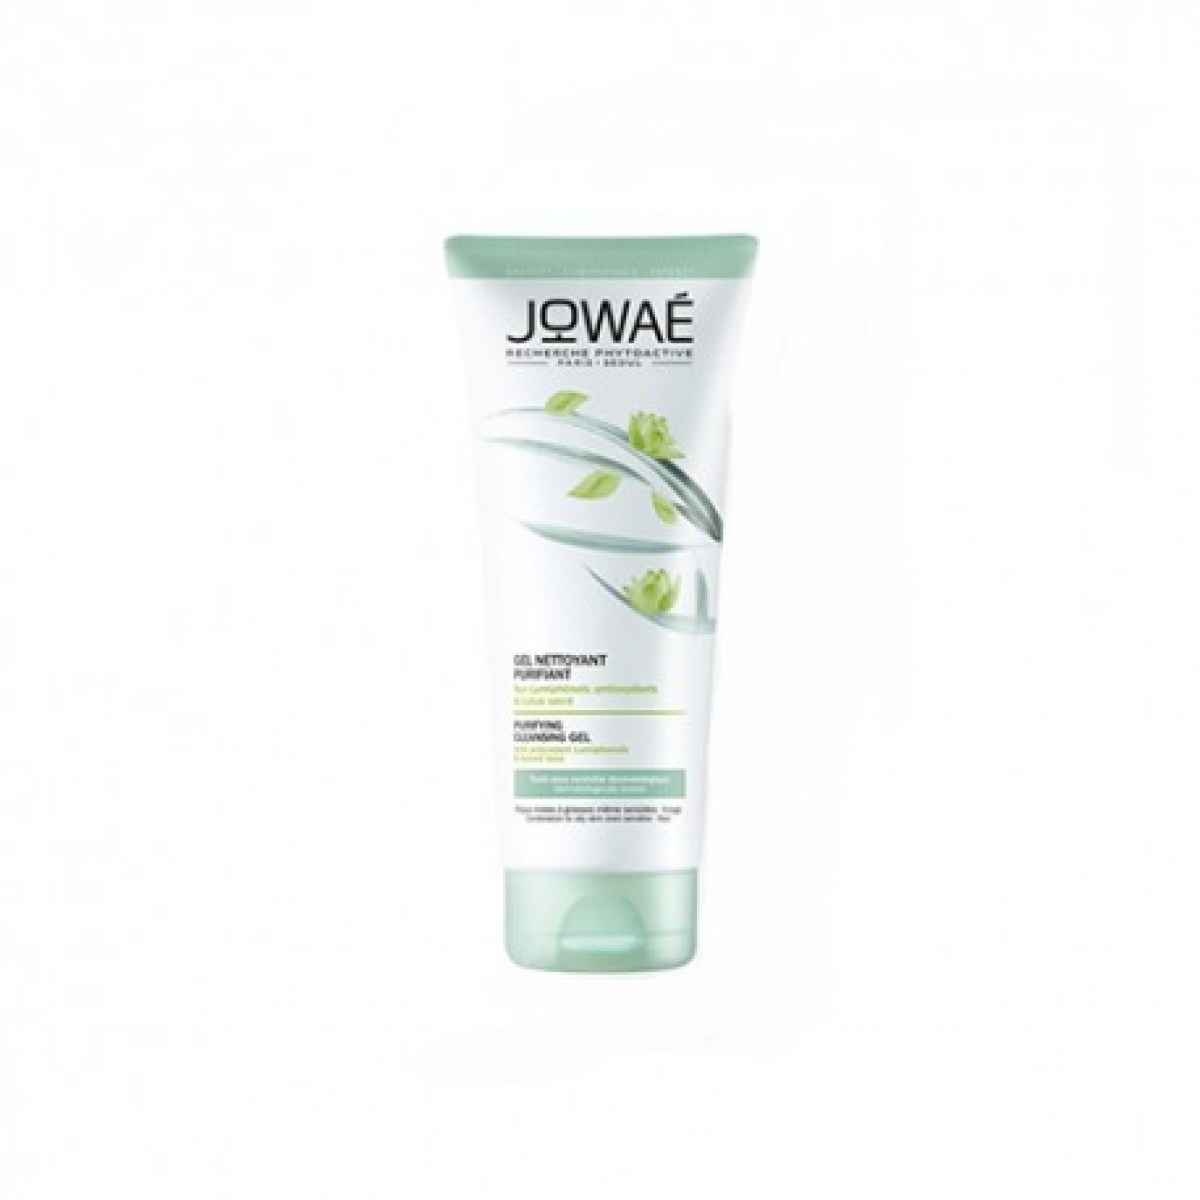 jowae-gel-detergente-purificante-200ml